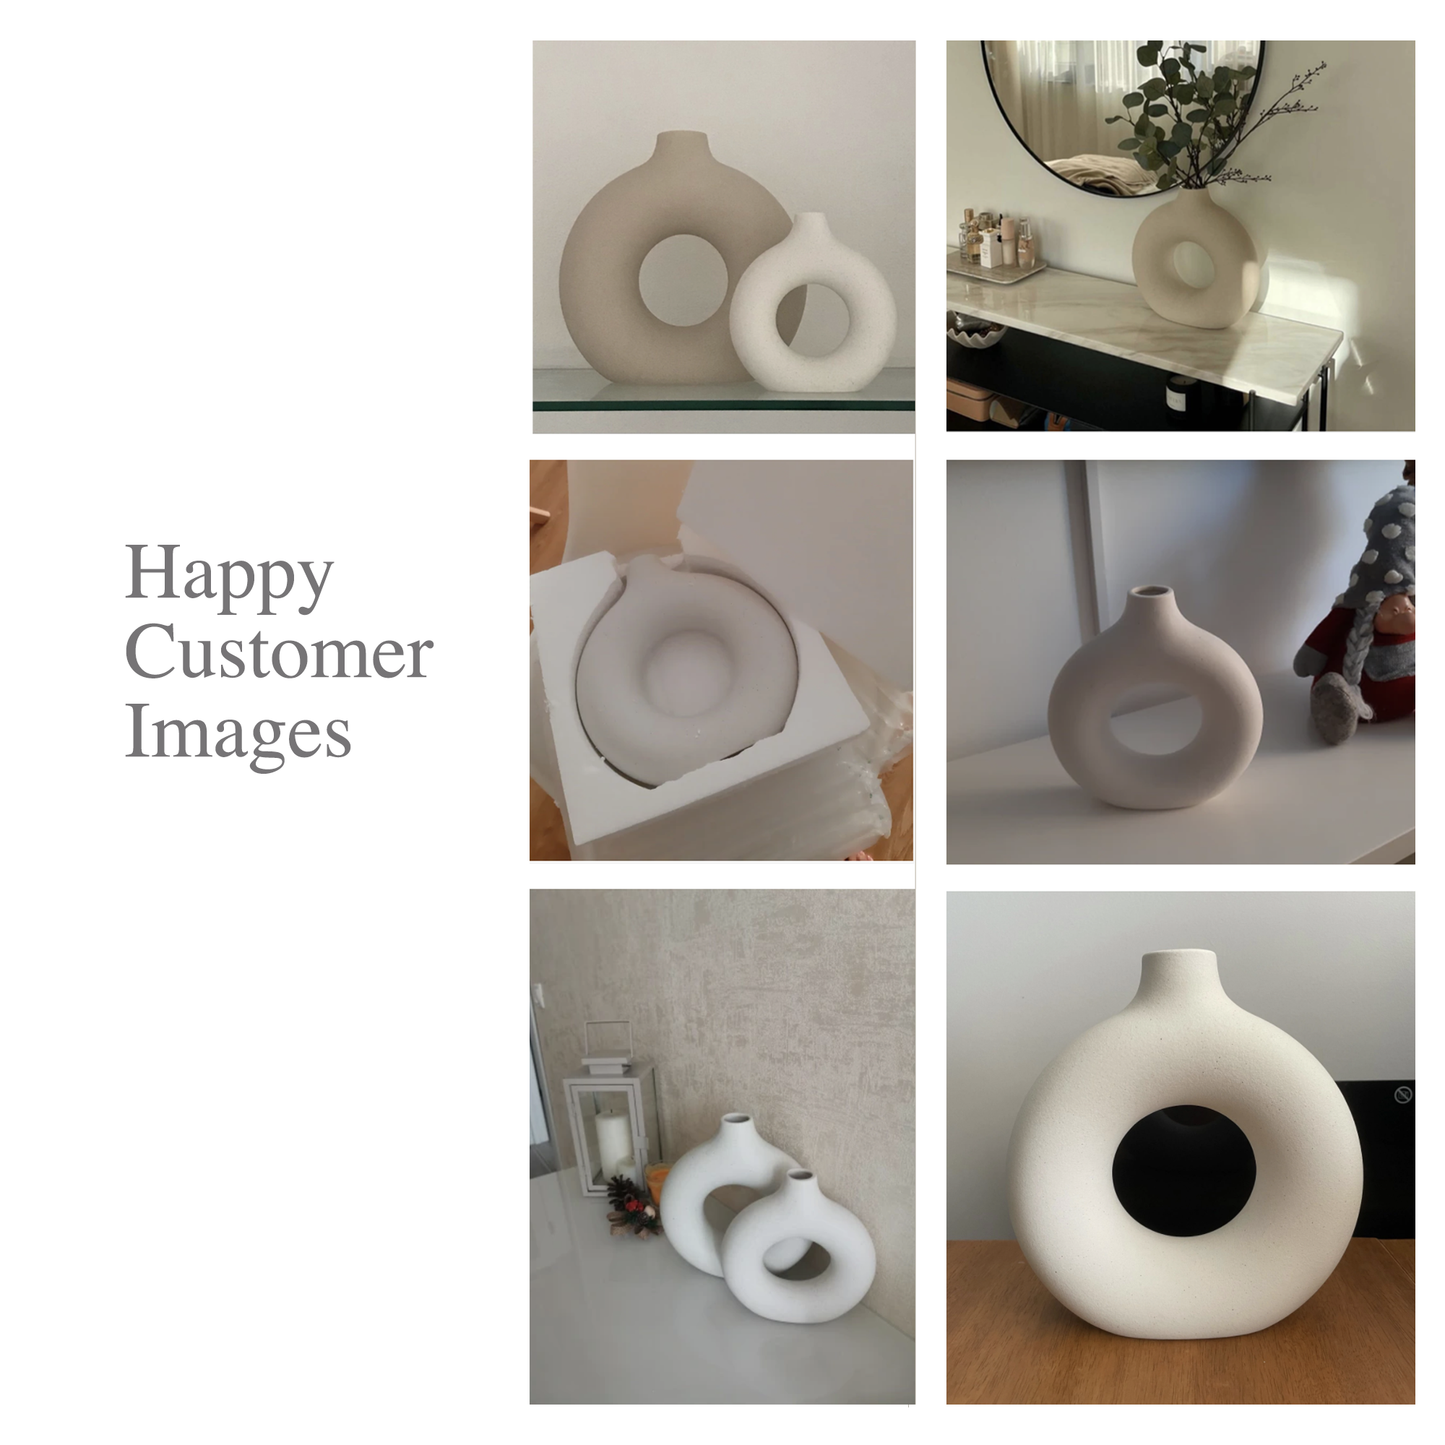 Ceramic Donut Vases